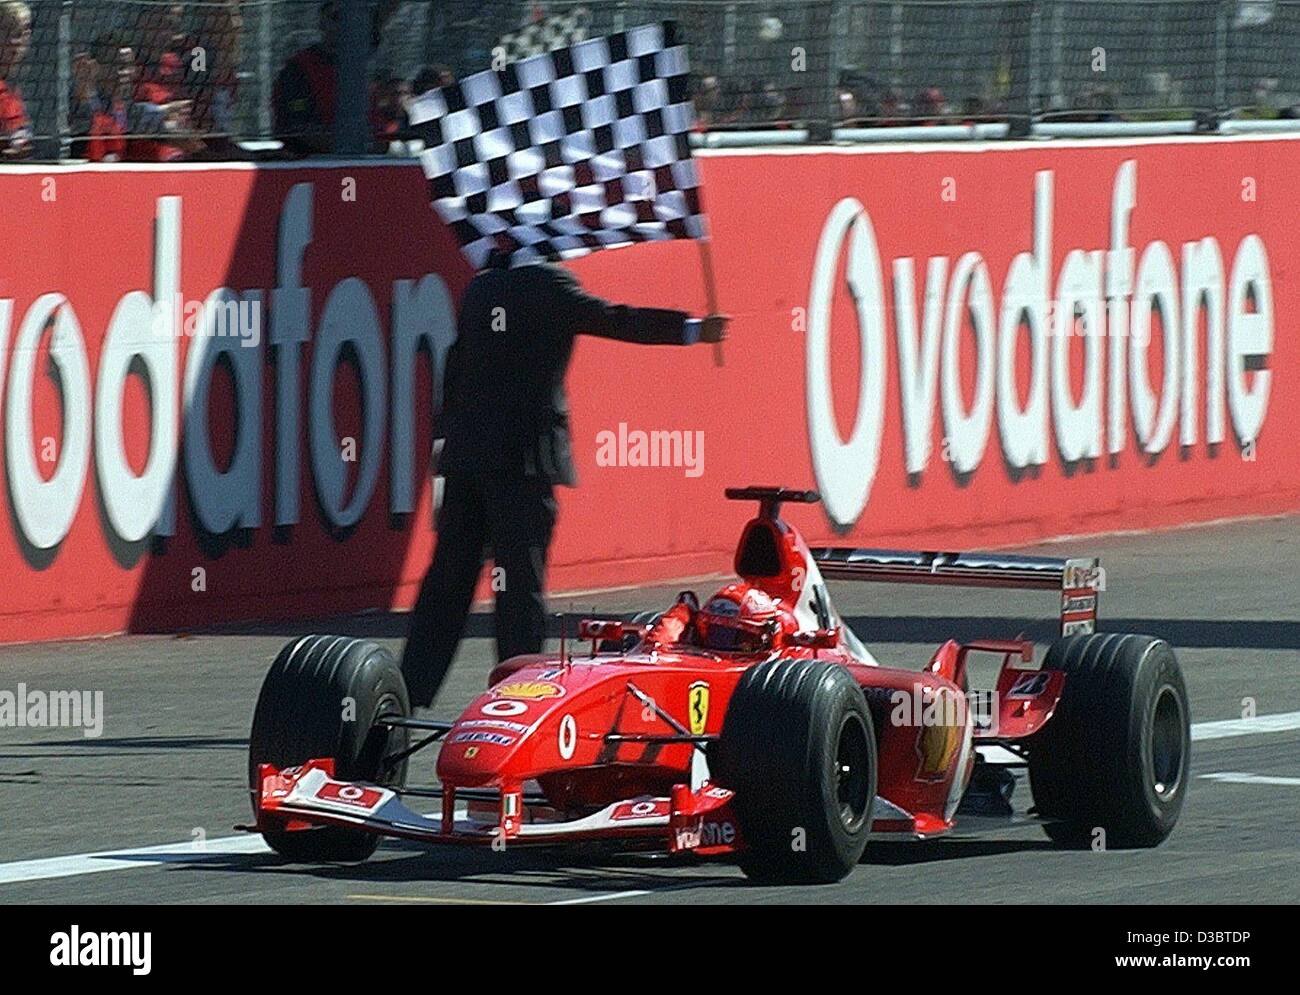 Michael Schumacher Fahne Chequered